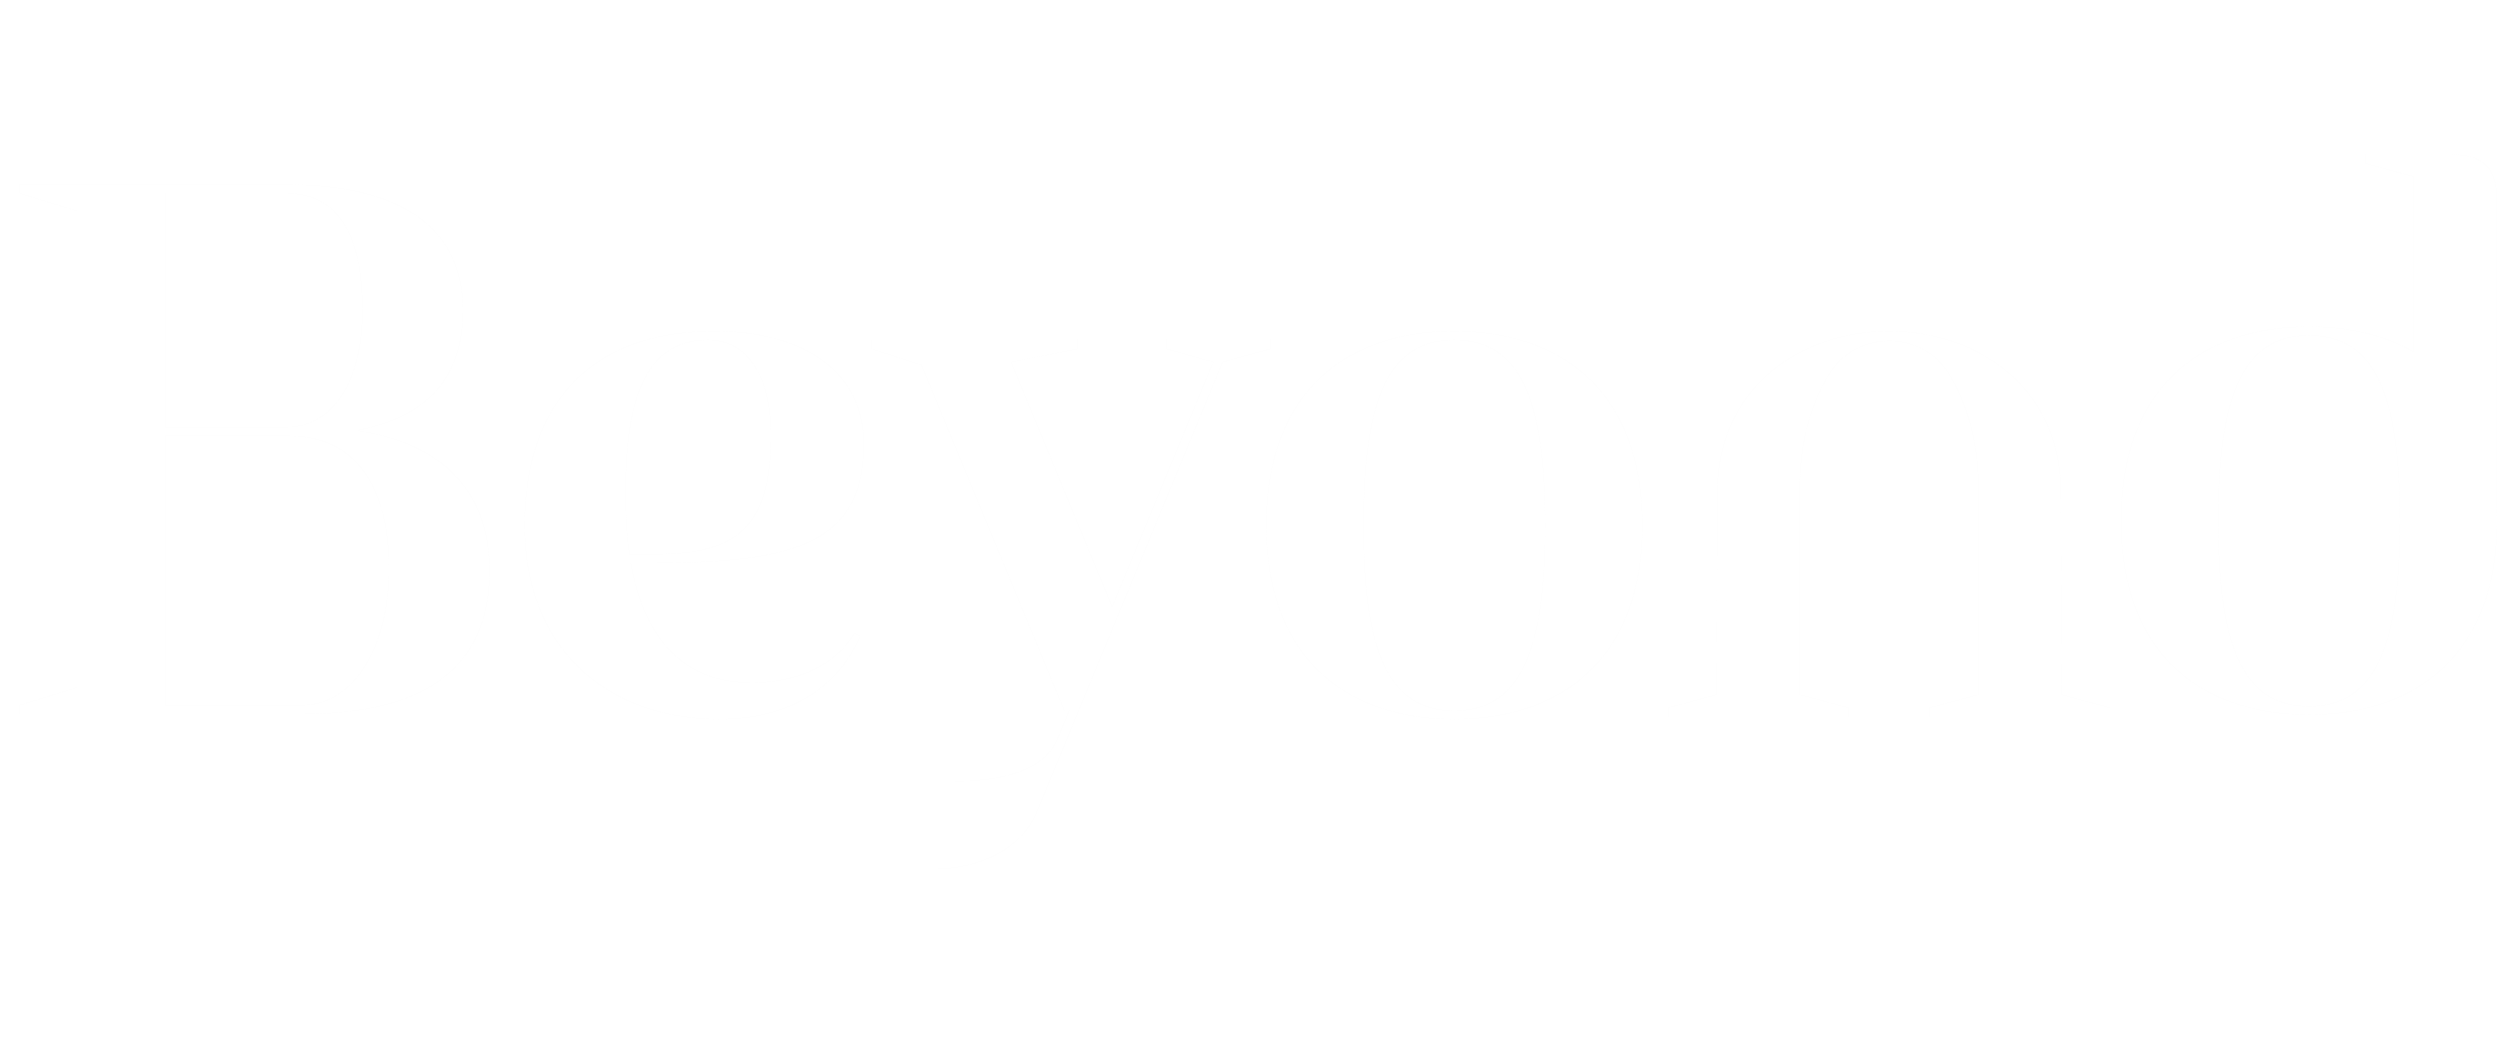 Beyond Tech Logo (White)